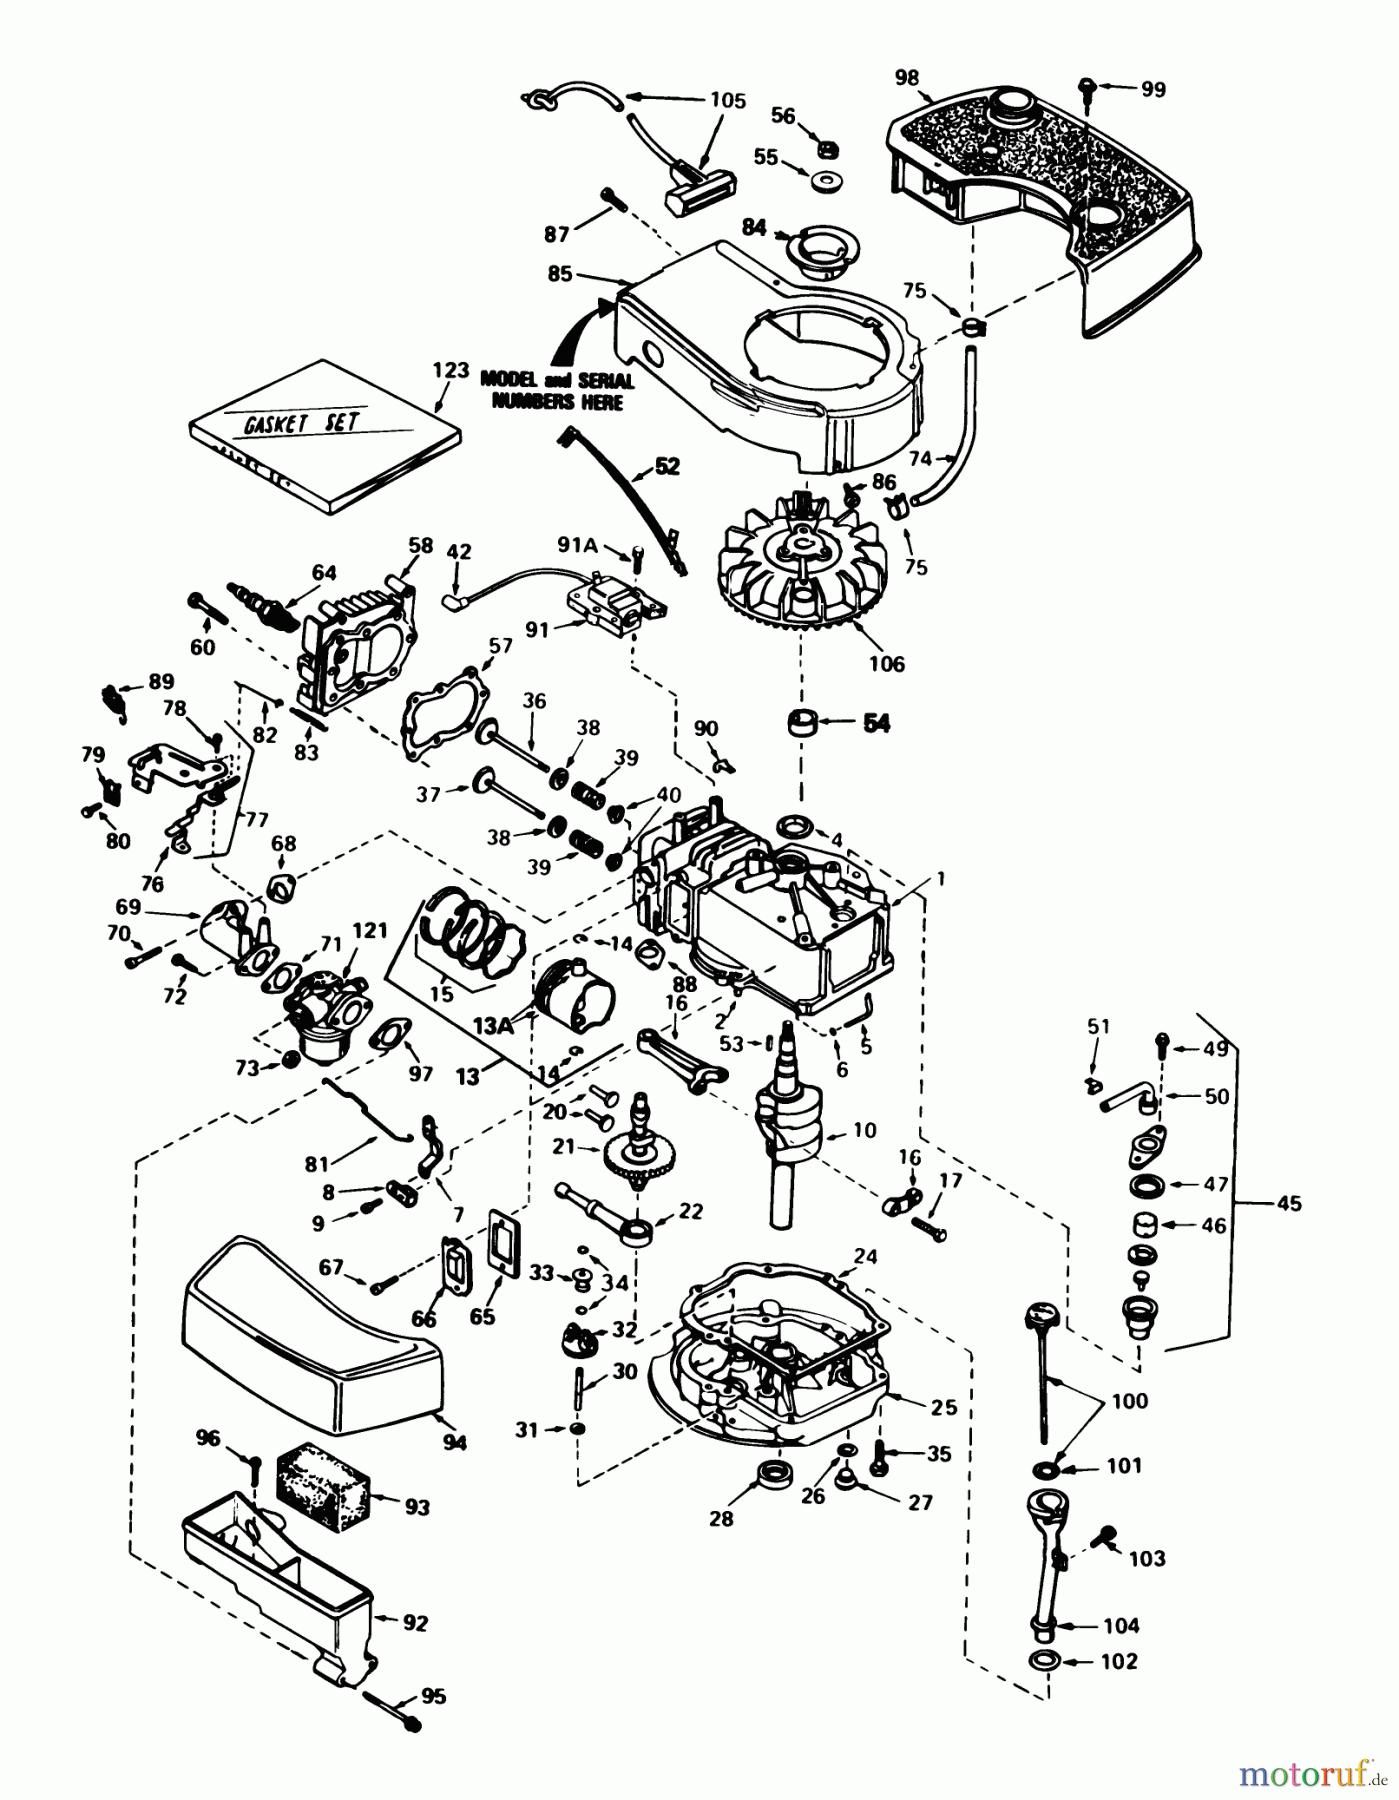  Toro Neu Mowers, Walk-Behind Seite 1 20718 - Toro Lawnmower, 1985 (5000001-5999999) ENGINE TECUMSEH MODEL NO. TNT100-10087E